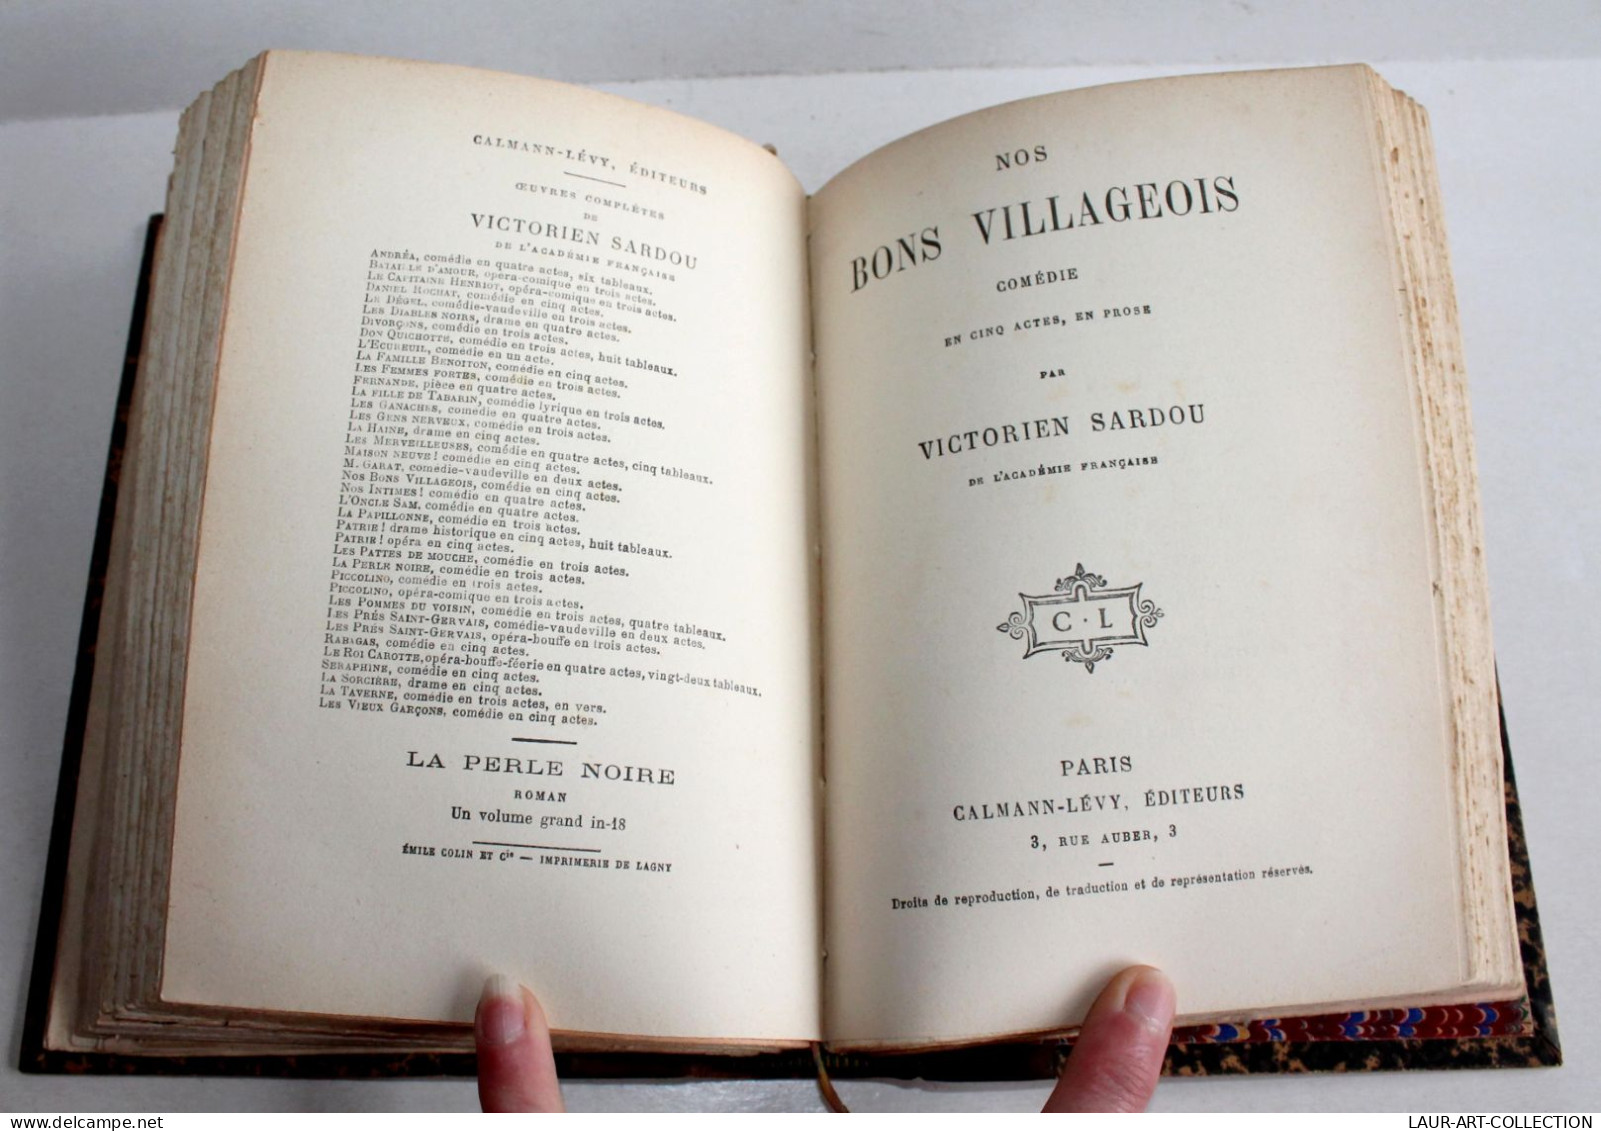 RARE! VICTORIEN SARDOU De CLARETIE + NOS BONS VILLAGEOIS COMEDIE 1883 THEATRE / ANCIEN LIVRE XIXe SIECLE (2603.42) - Autores Franceses